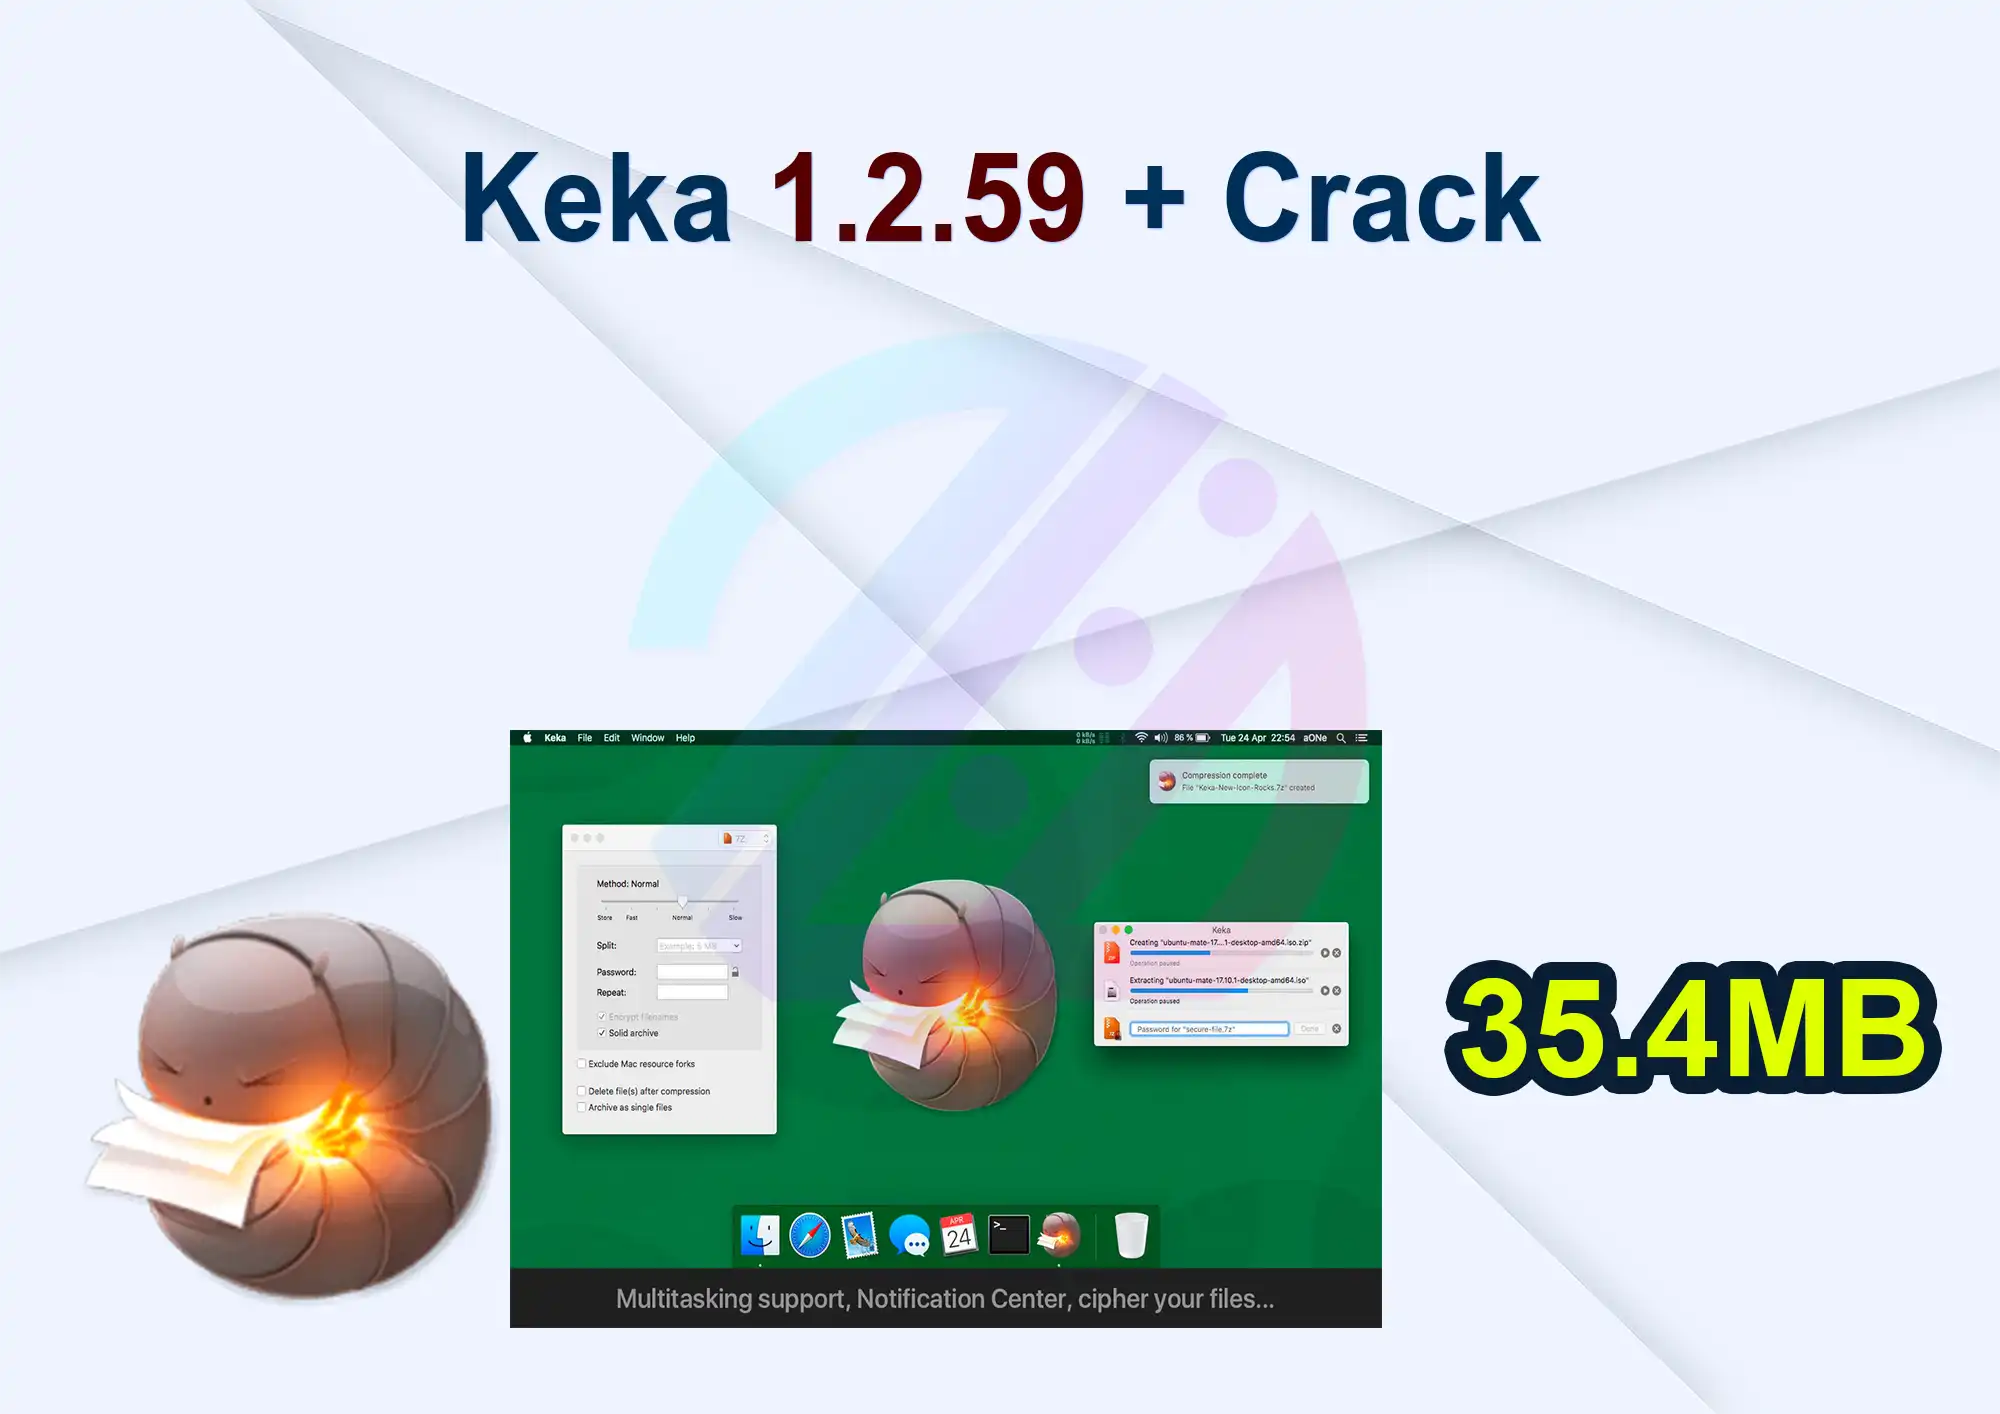 Keka 1.2.59 + Crack